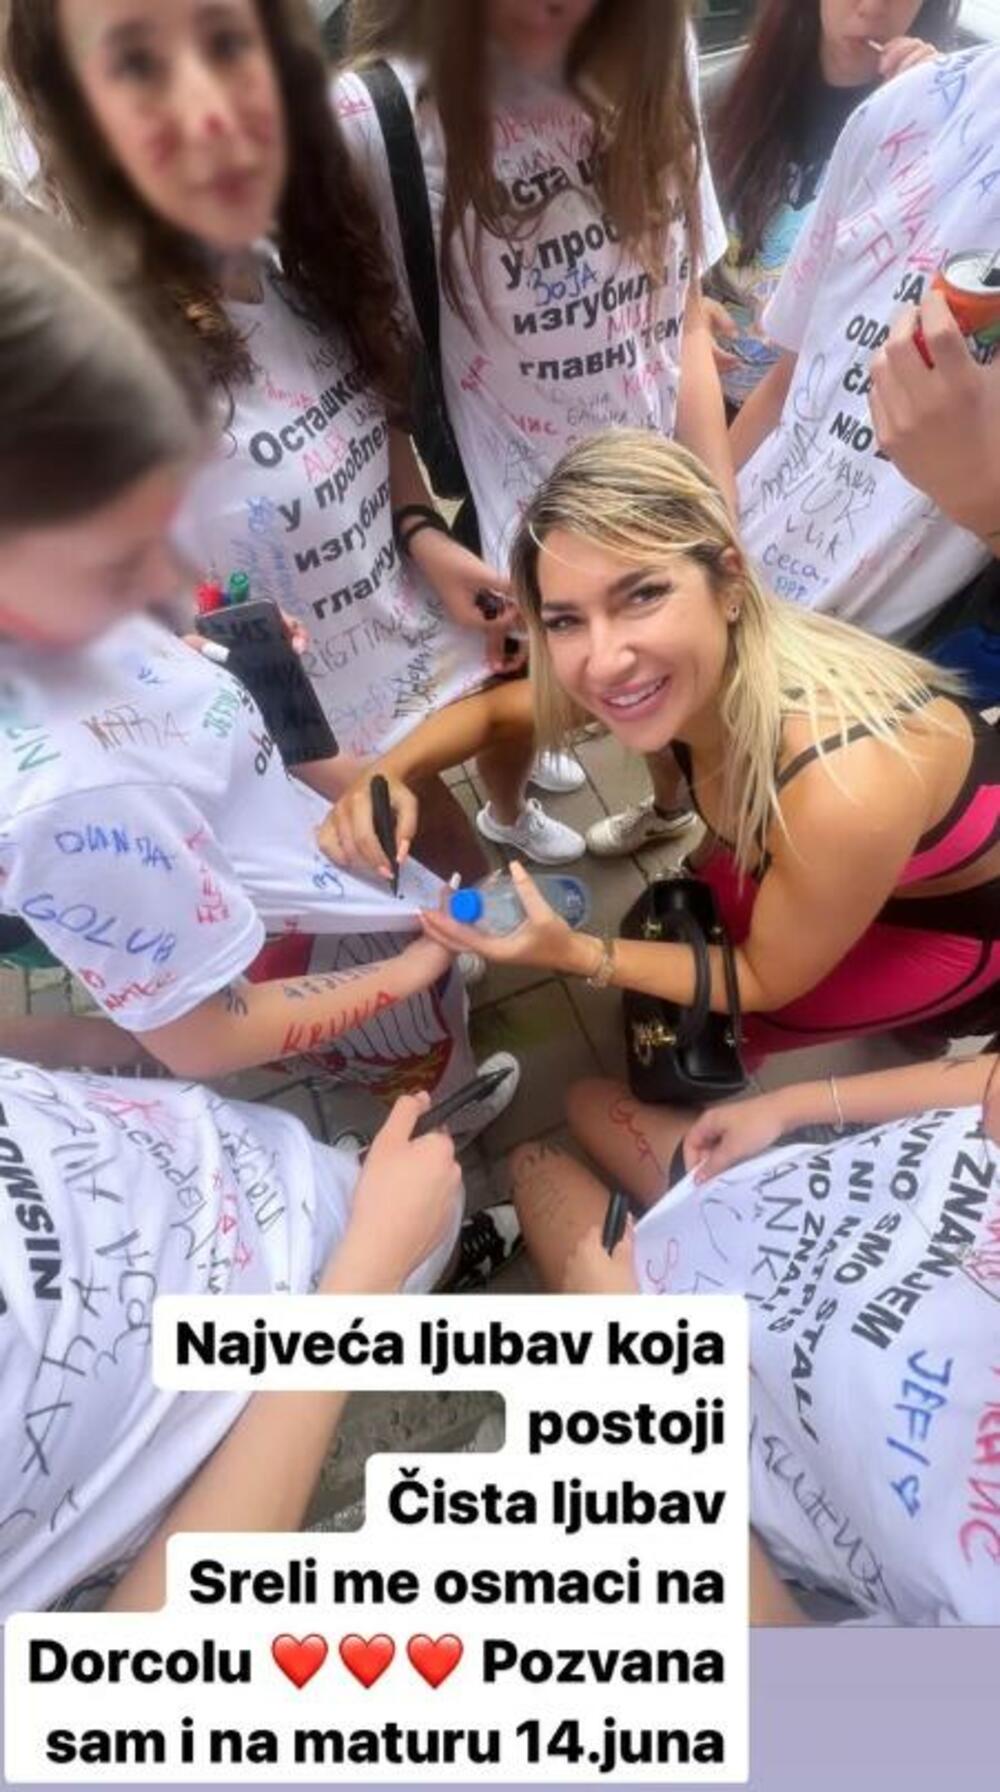 Jeremićeva se potom i potpisala svima ponaosob, na majicama, nekima i na telu, a sve to je ovekovečila na svom Instagramu.